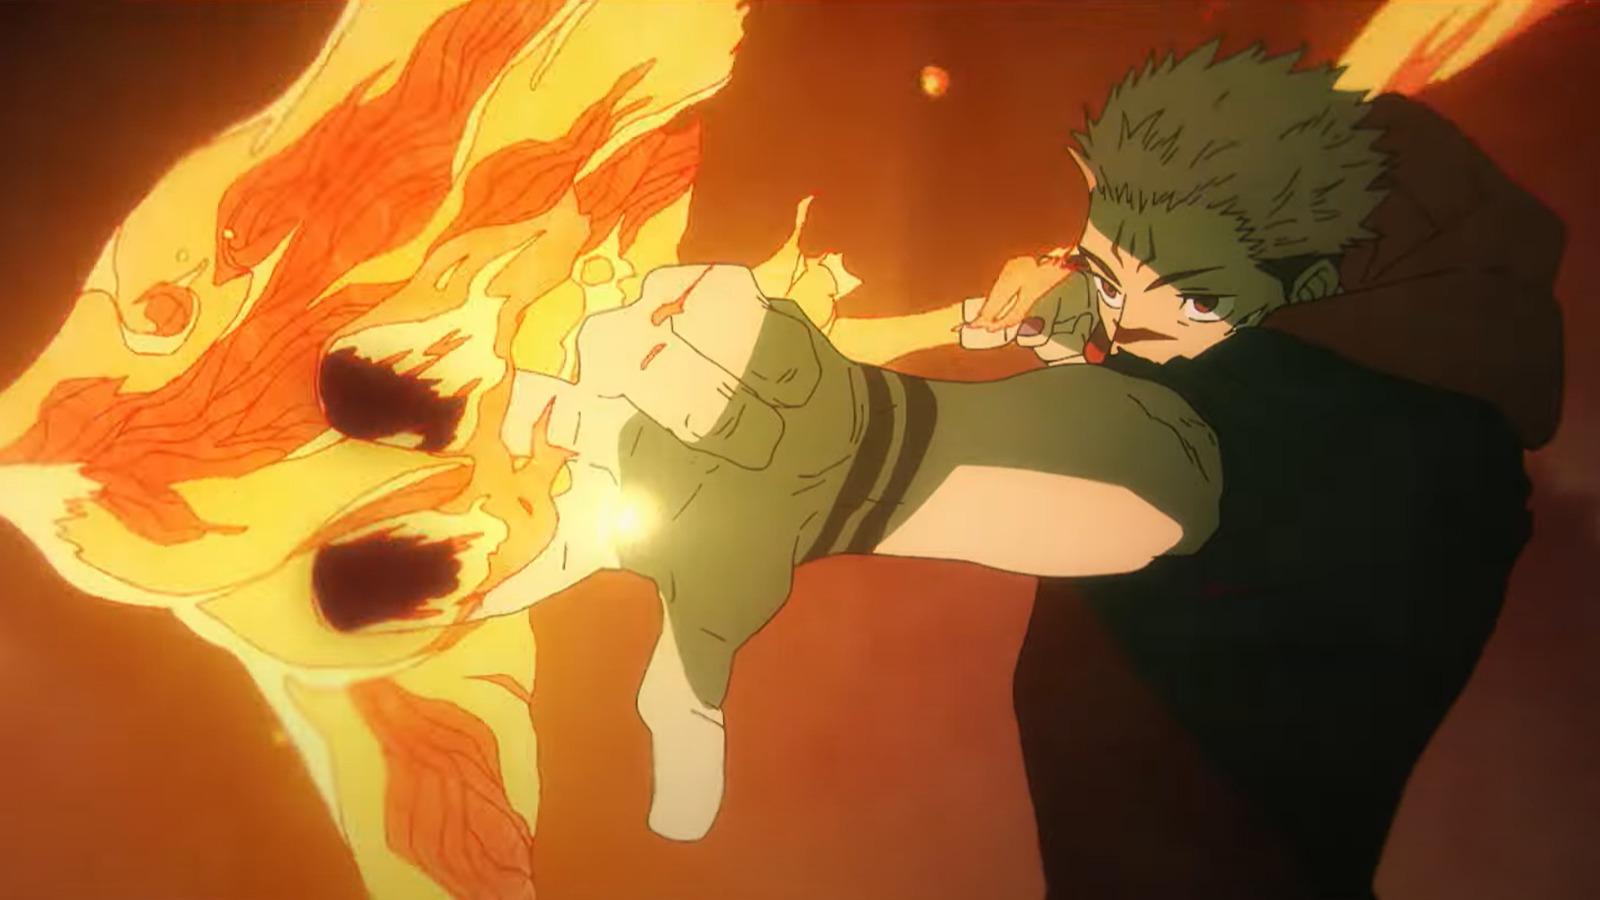 JJK S2 New Trailer Released - Anime Fire